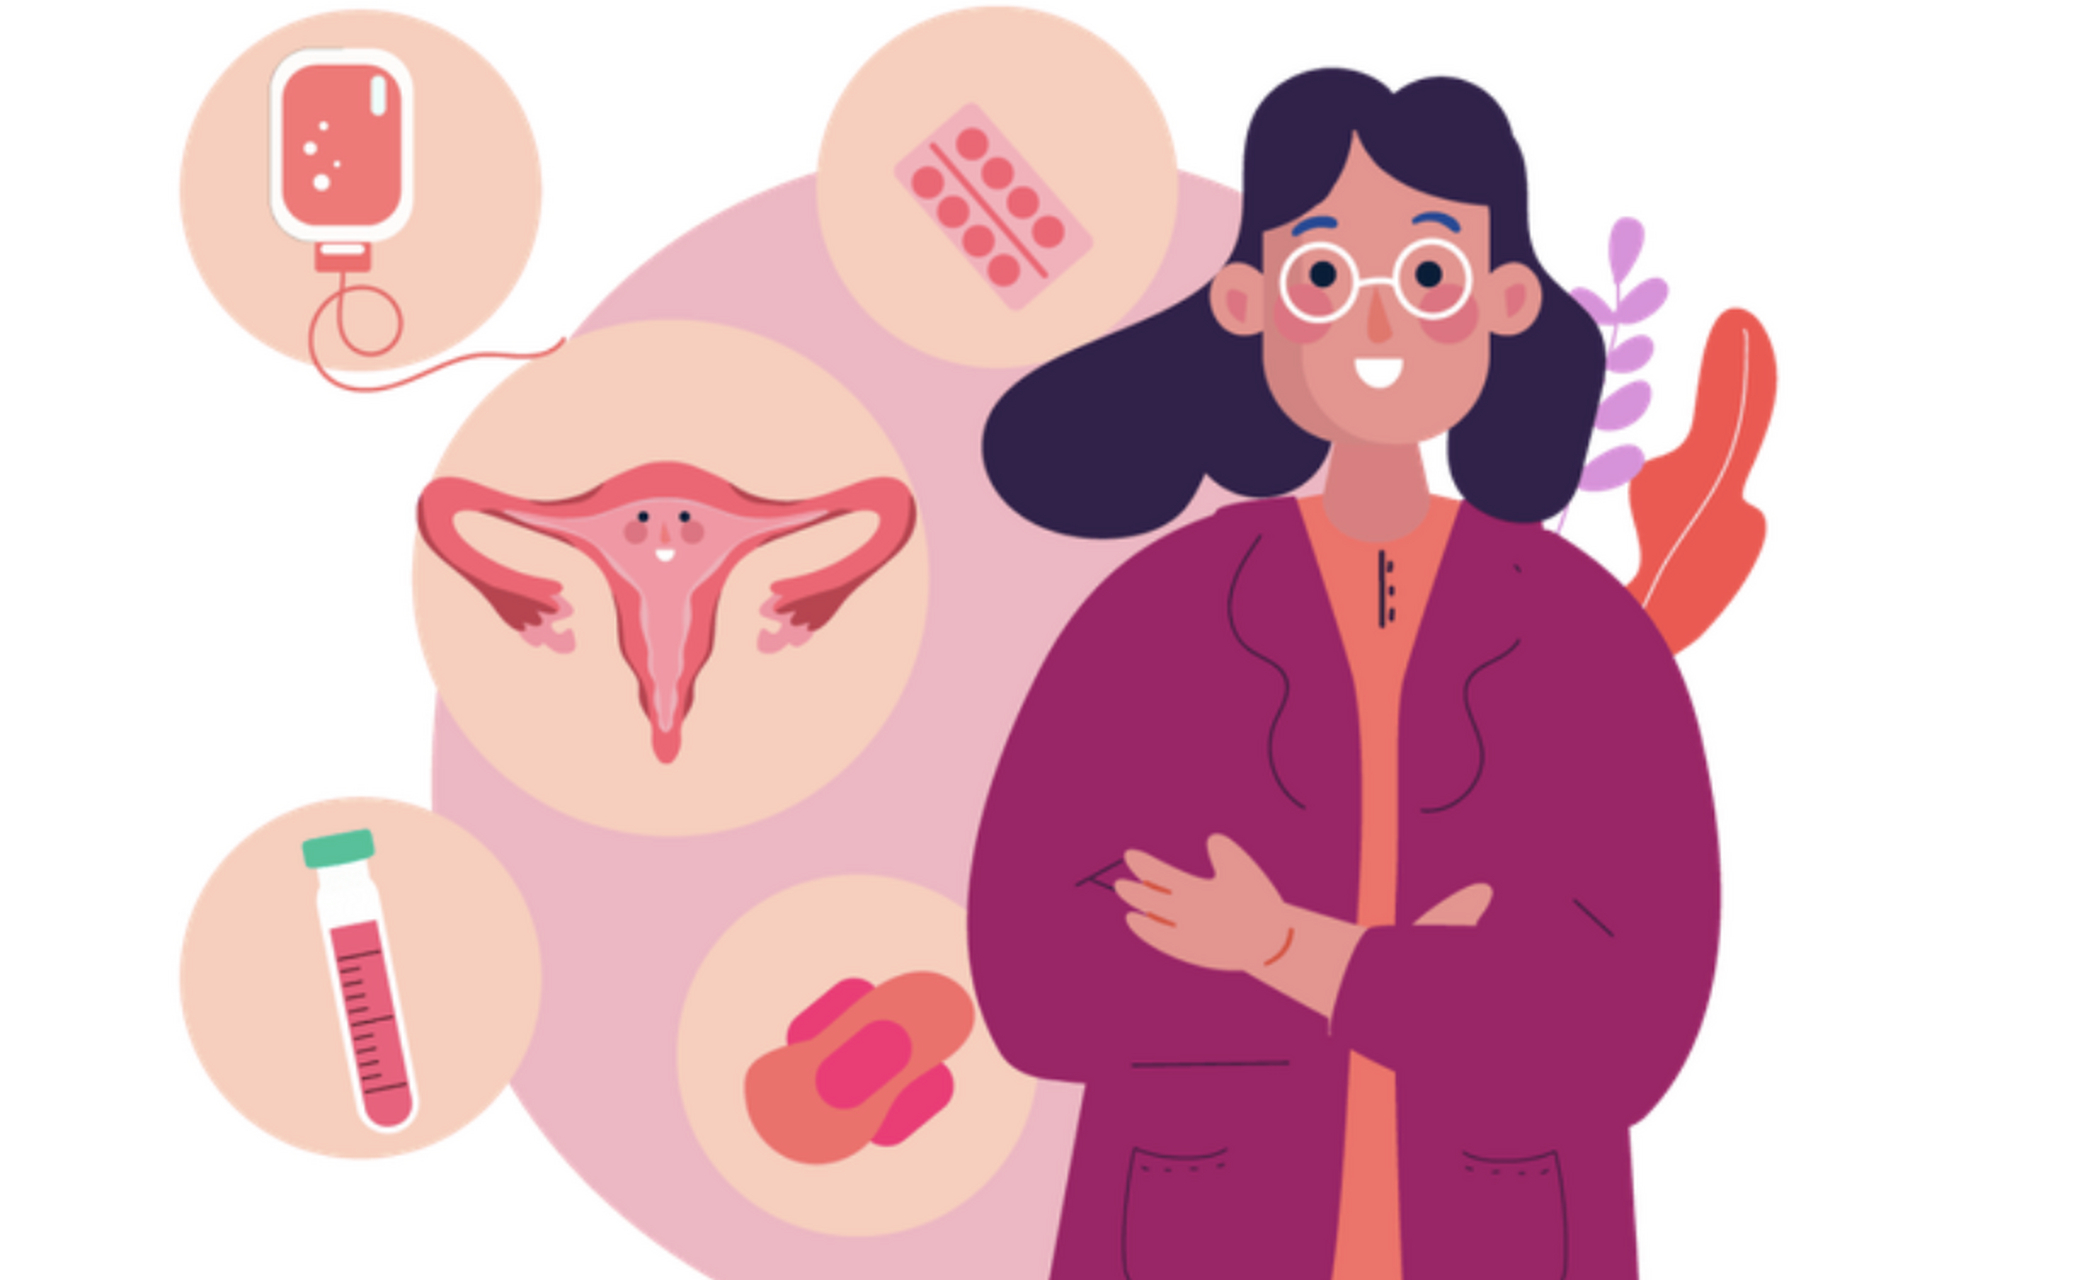 妇科疾病的早期警告信号  妇科疾病是指影响女性生殖系统的疾病,包括